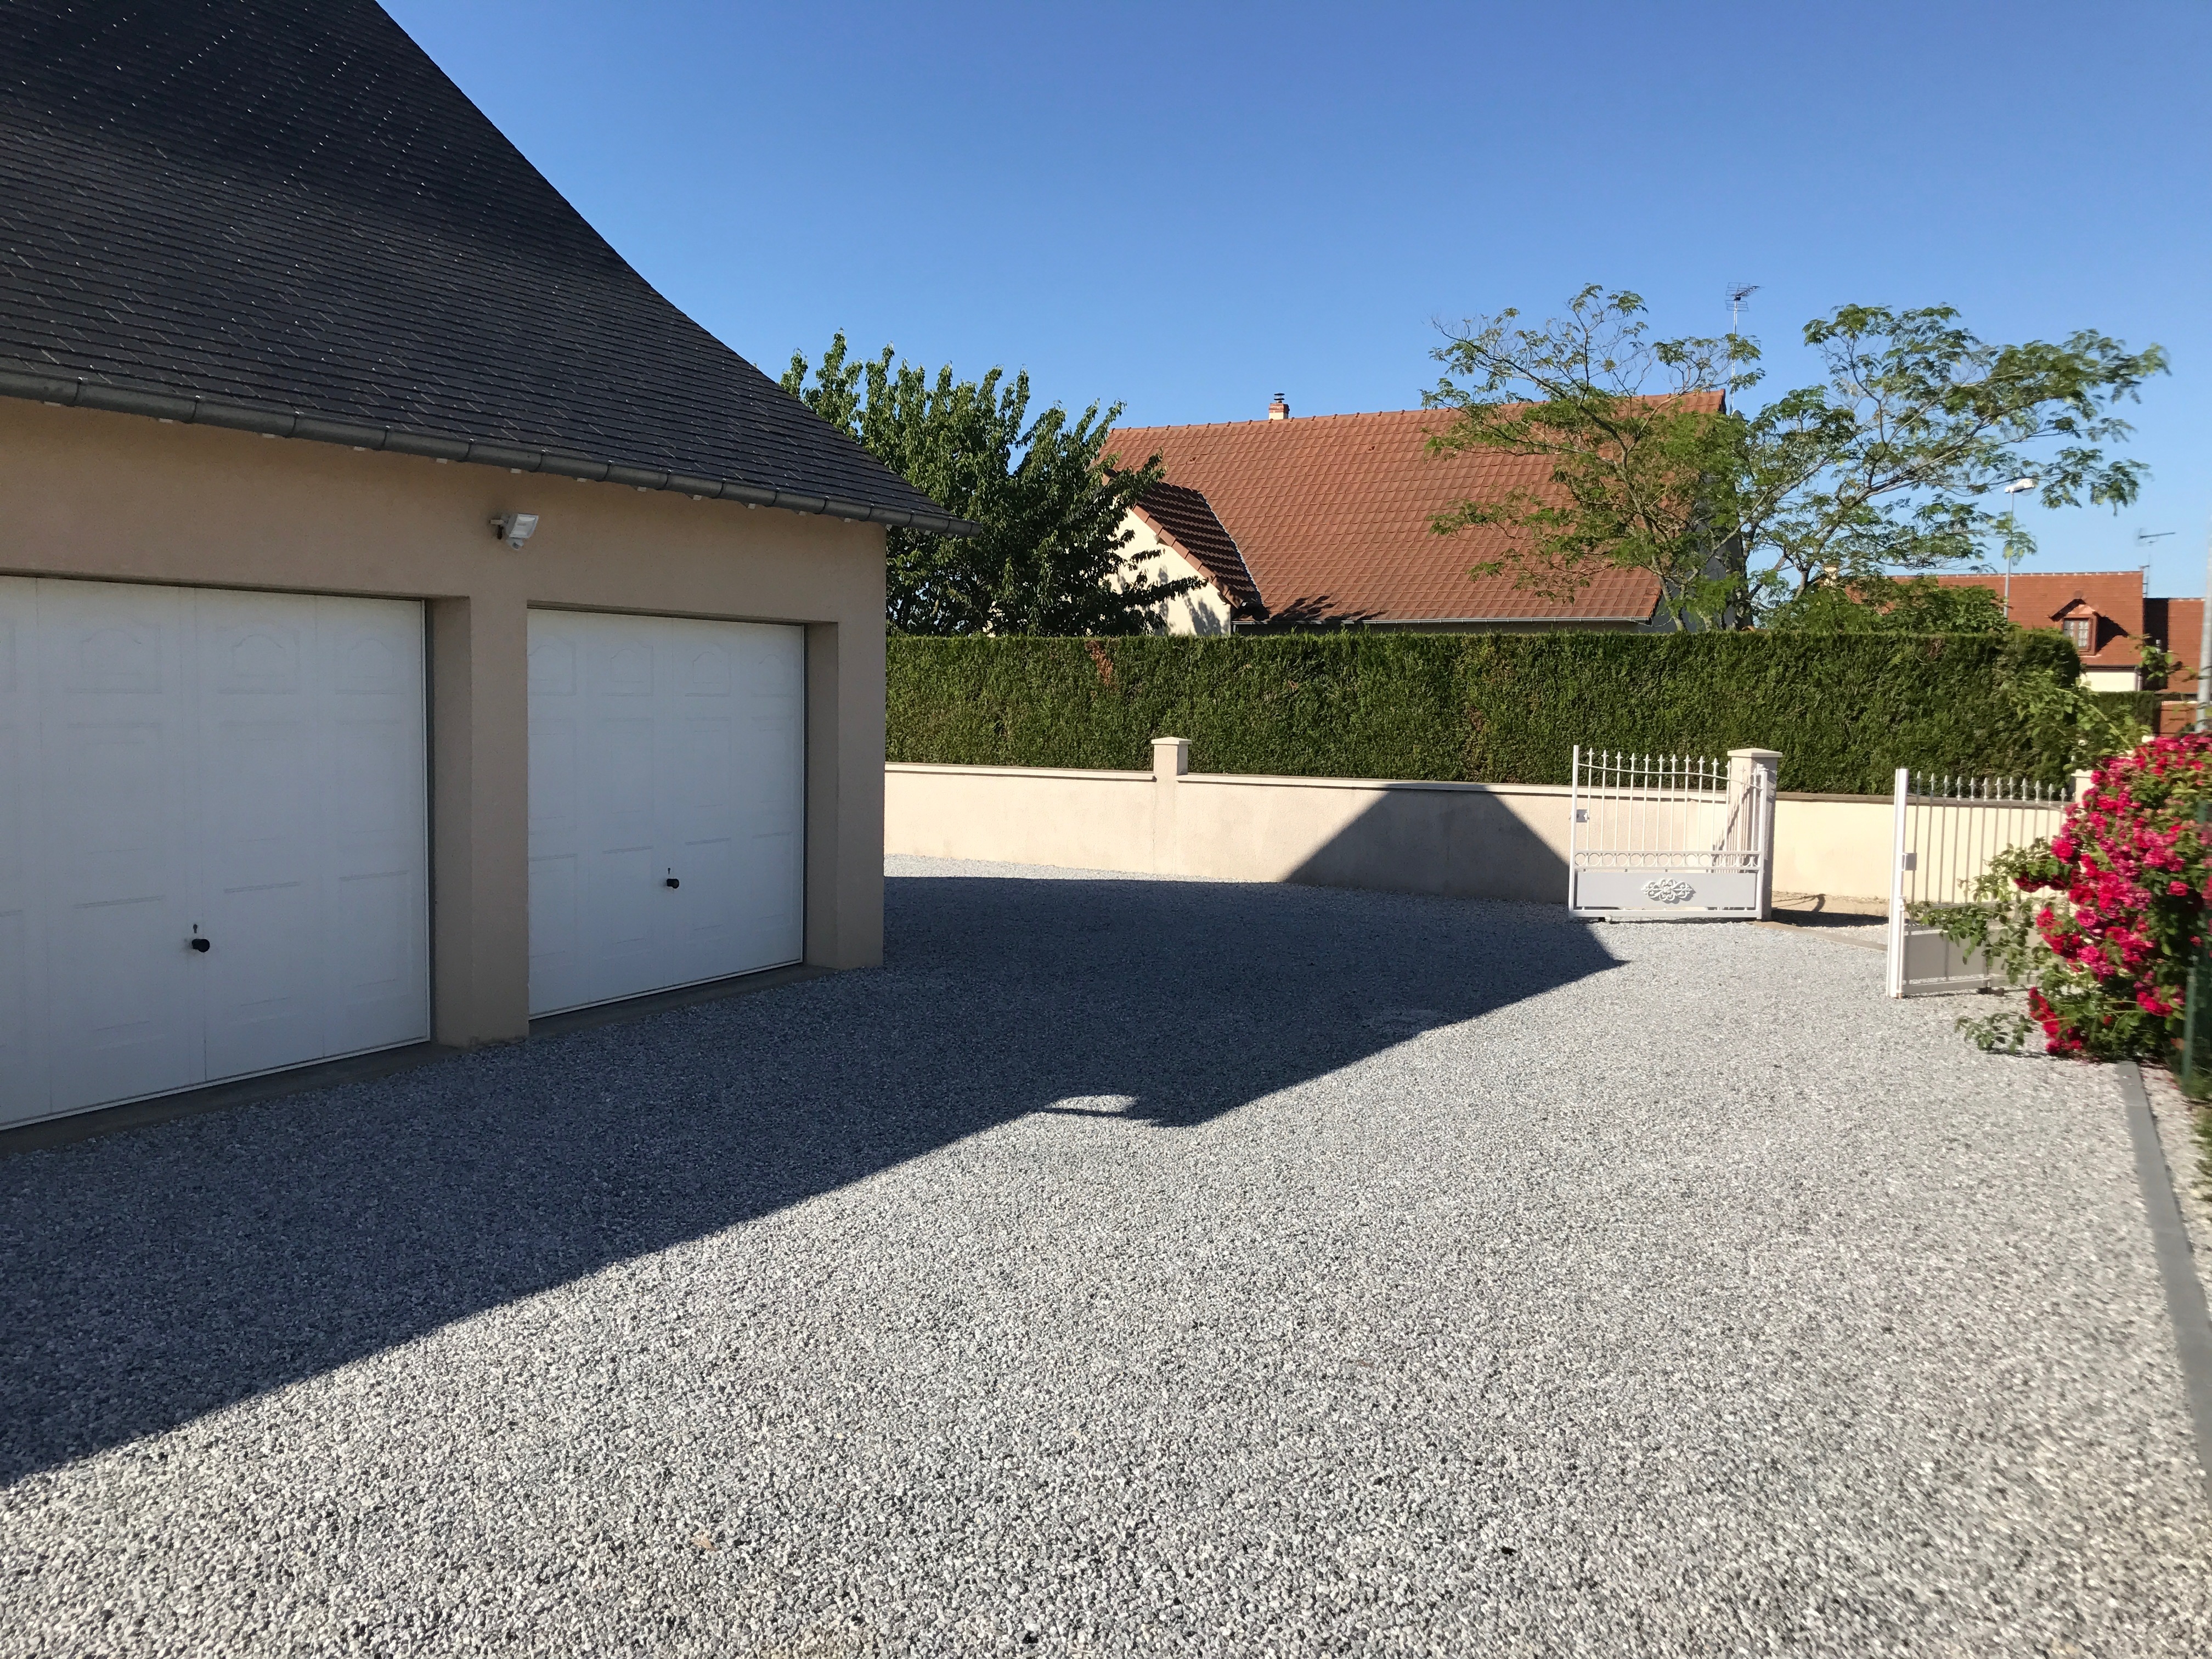 Ralisation Alle de garage en Alvostar - Entreprise Delima   Villebarou cre le 30/01/2019